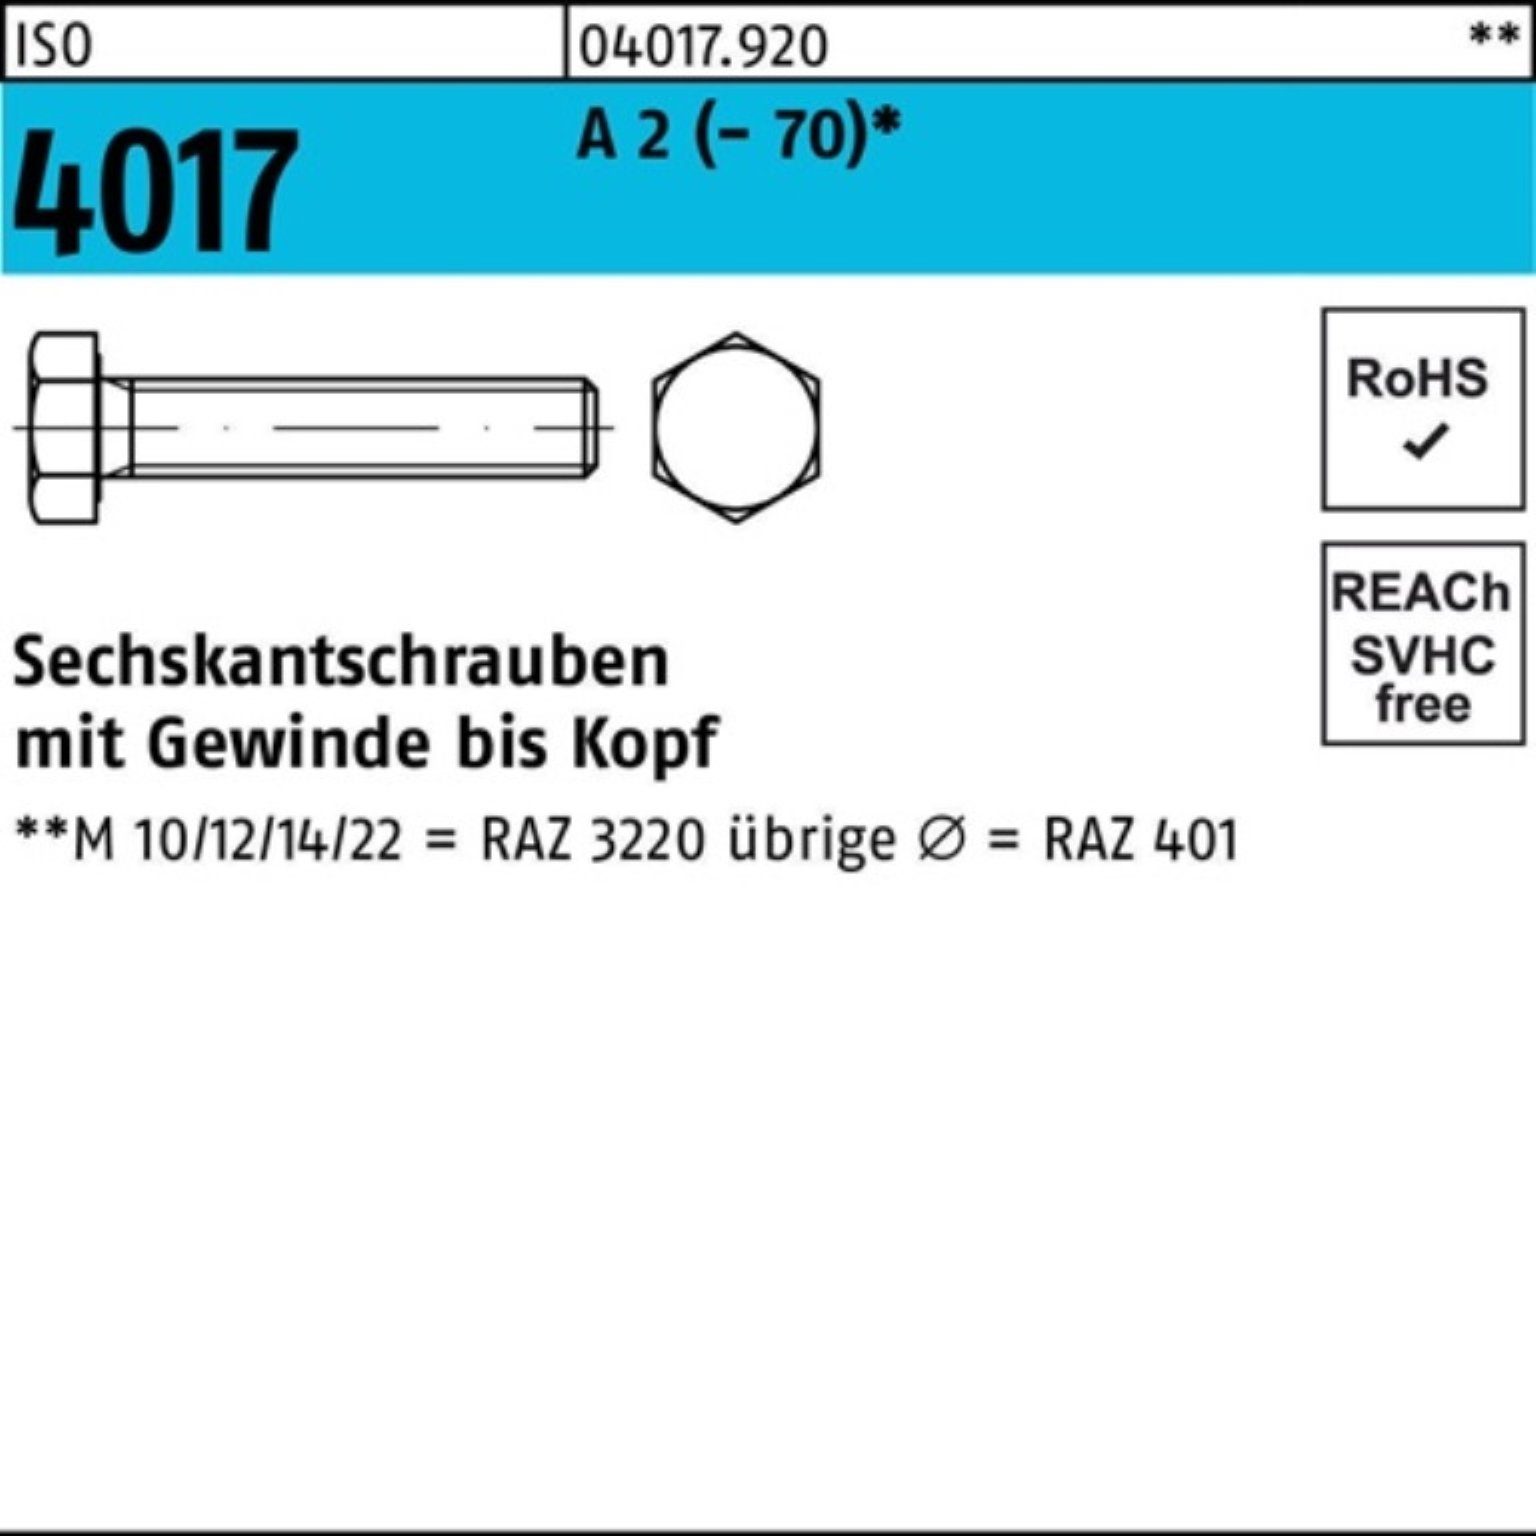 Bufab Sechskantschraube 200er Pack Sechskantschraube ISO 4017 VG M8x 45 A 2 (70) 200 Stück